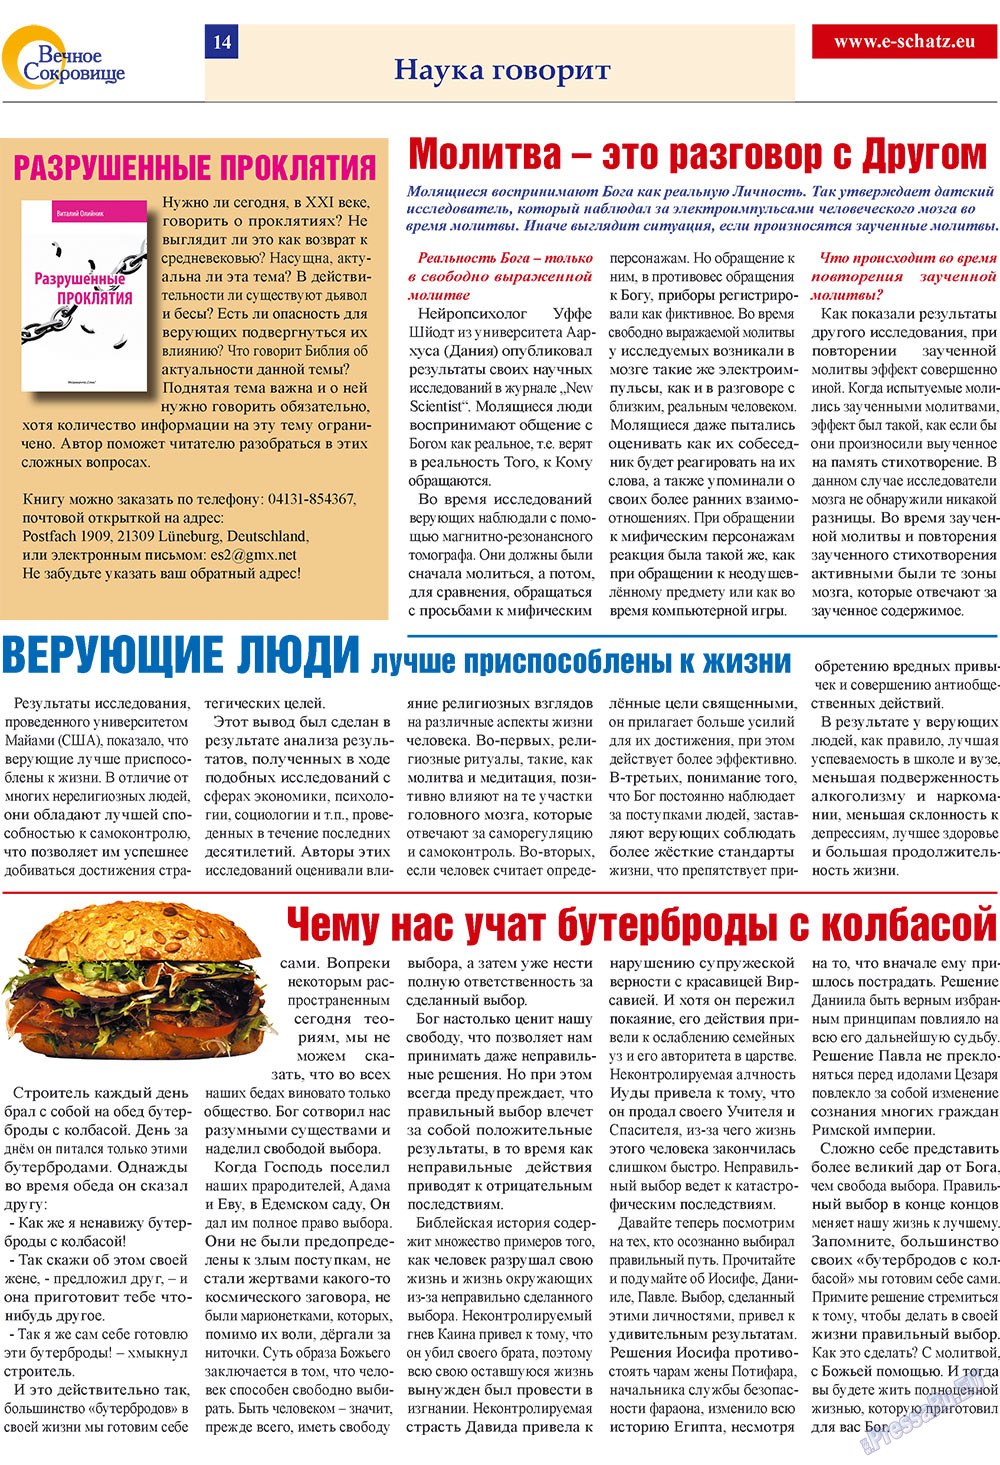 Вечное сокровище, газета. 2009 №2 стр.14